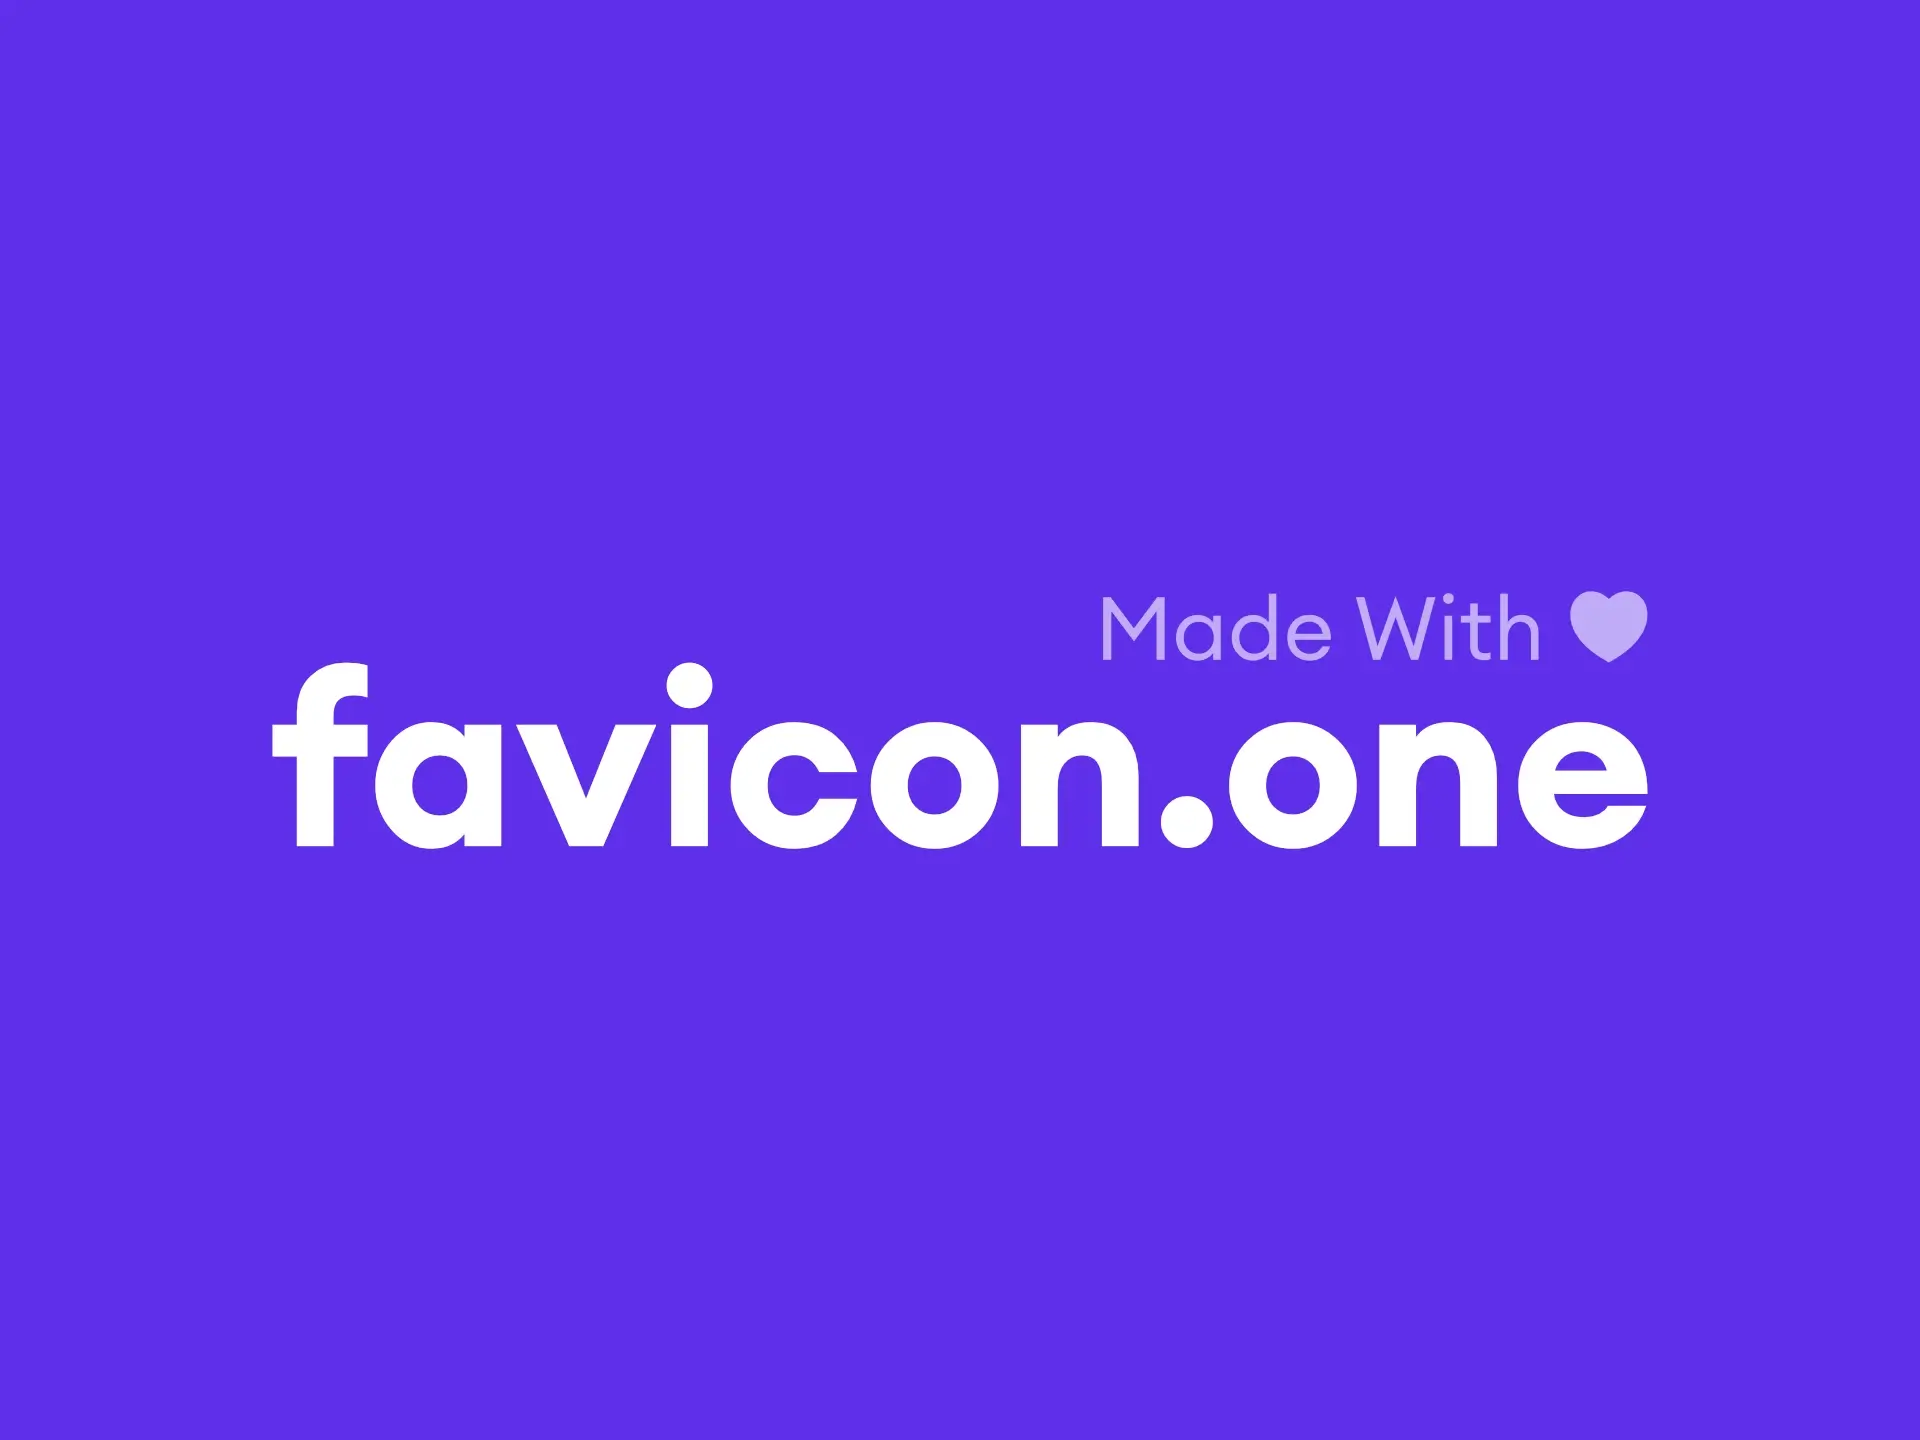 favicon.one